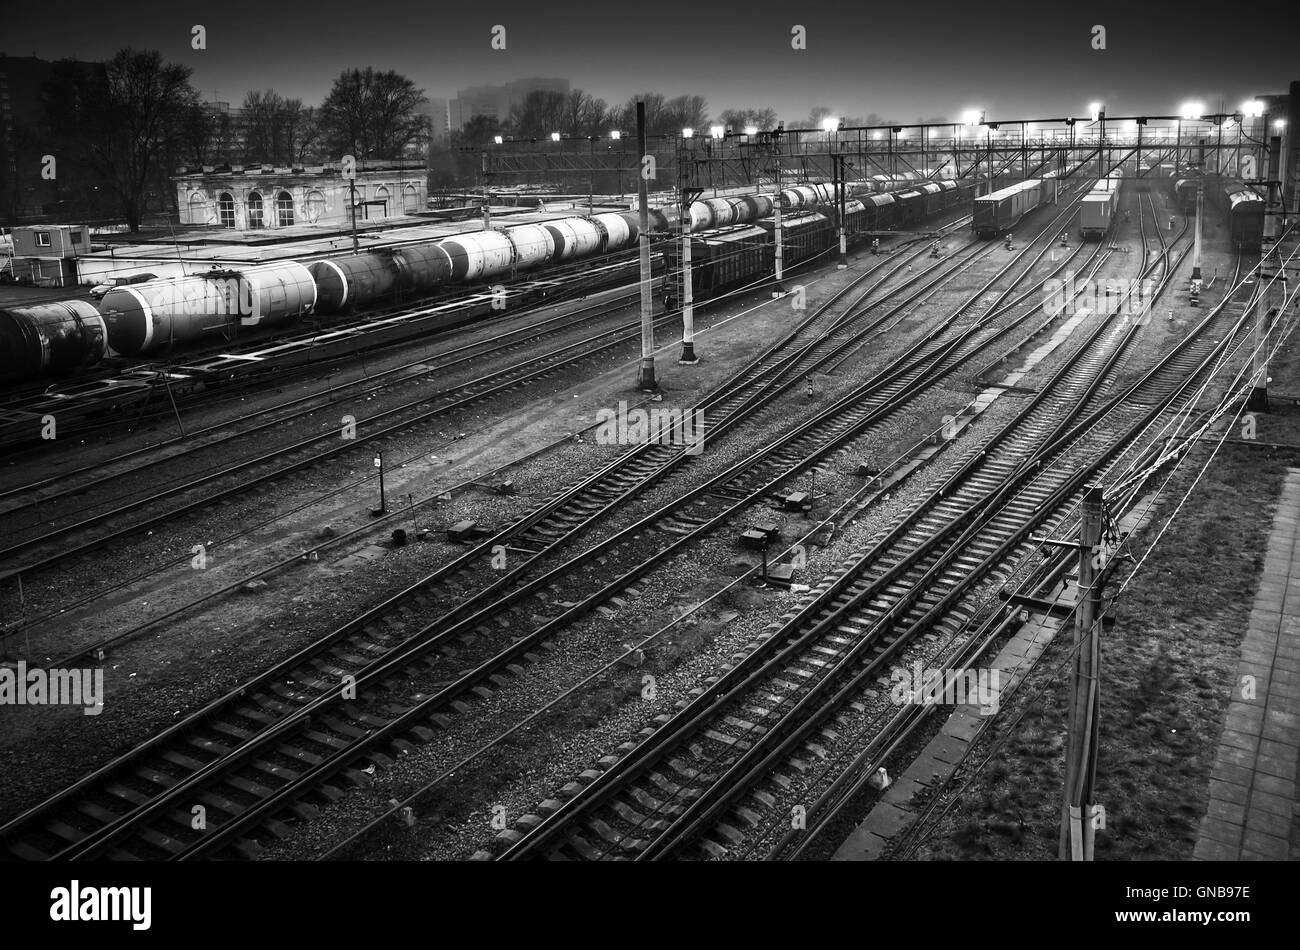 Bahnhof mit Güterzüge auf Schienen in der Nacht, schwarz / weiß Foto sortieren Stockfoto